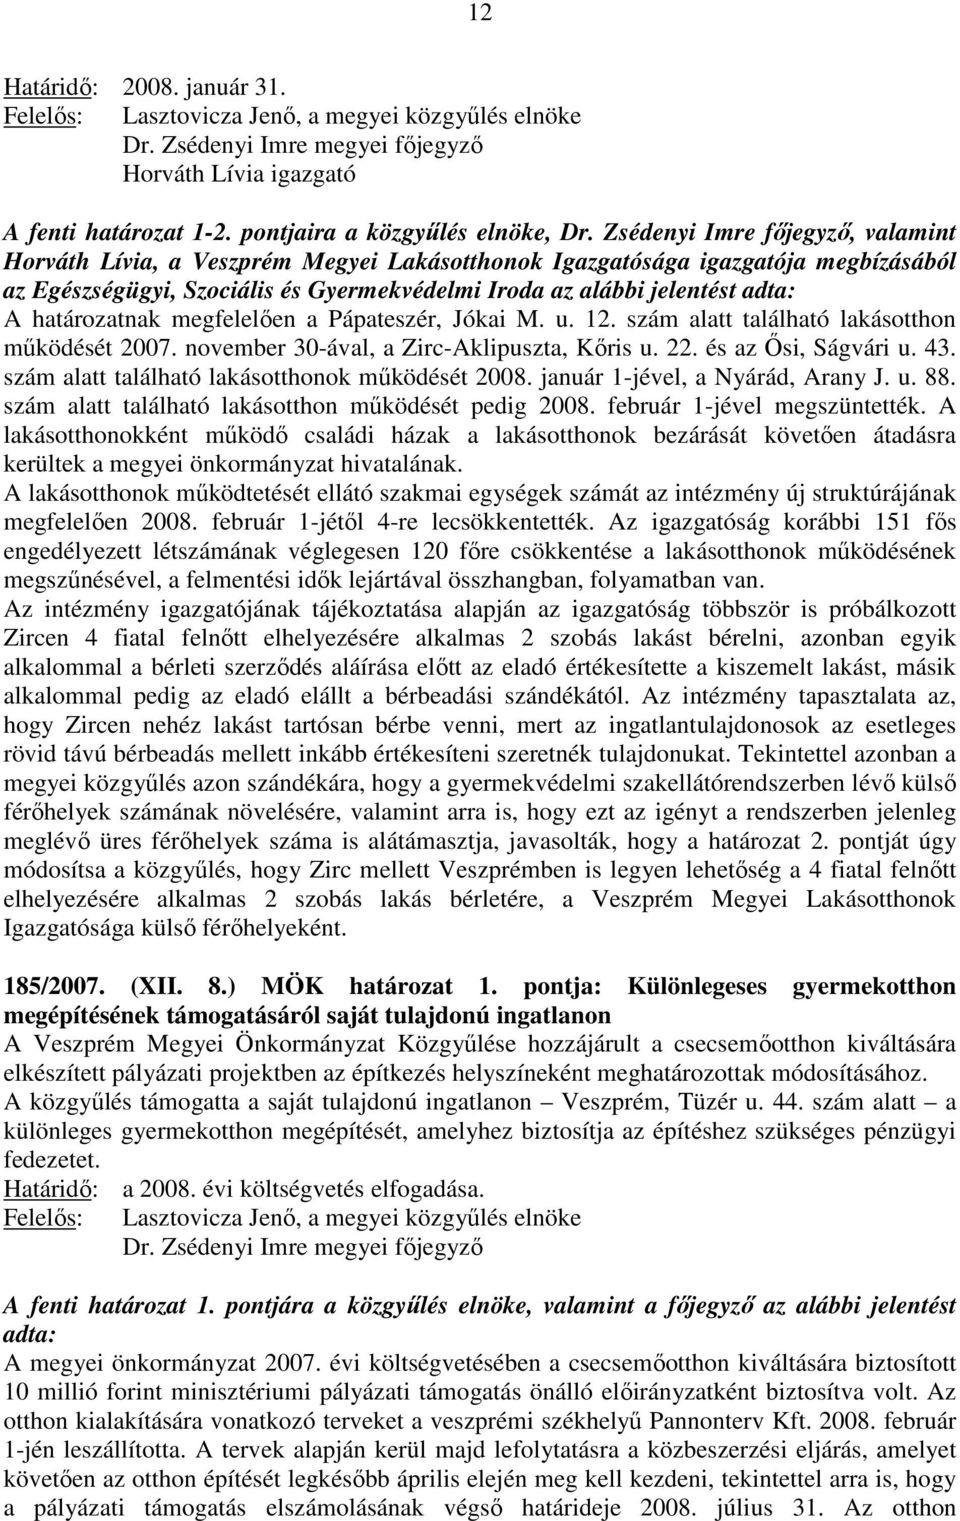 határozatnak megfelelıen a Pápateszér, Jókai M. u. 12. szám alatt található lakásotthon mőködését 2007. november 30-ával, a Zirc-Aklipuszta, Kıris u. 22. és az İsi, Ságvári u. 43.